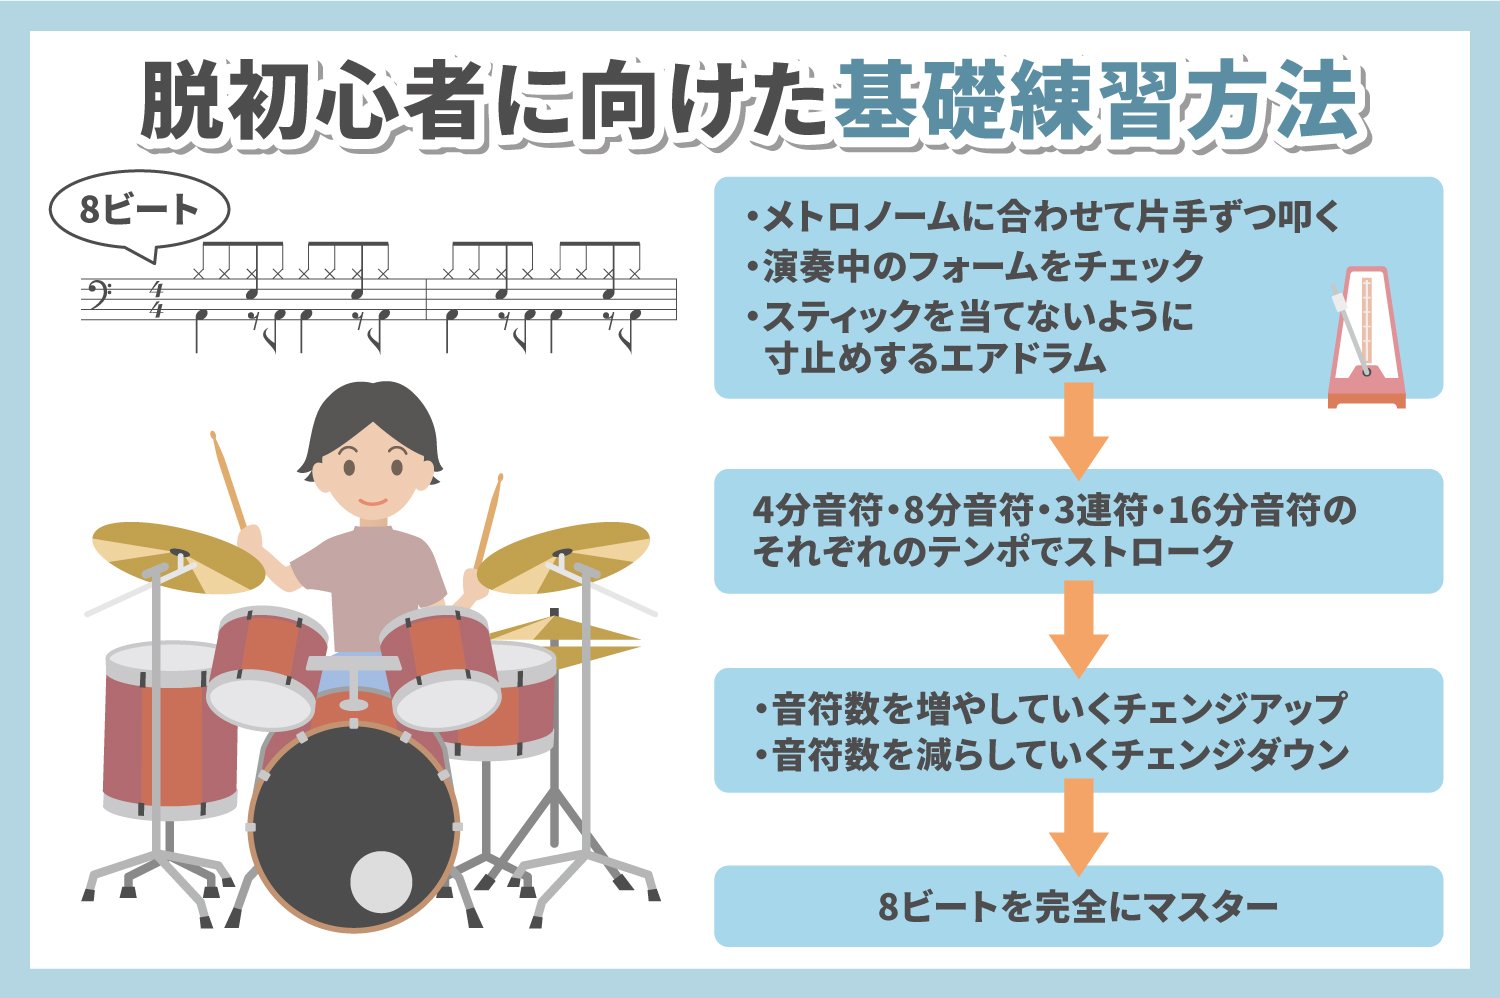 ドラムの脱初心者のための練習方法